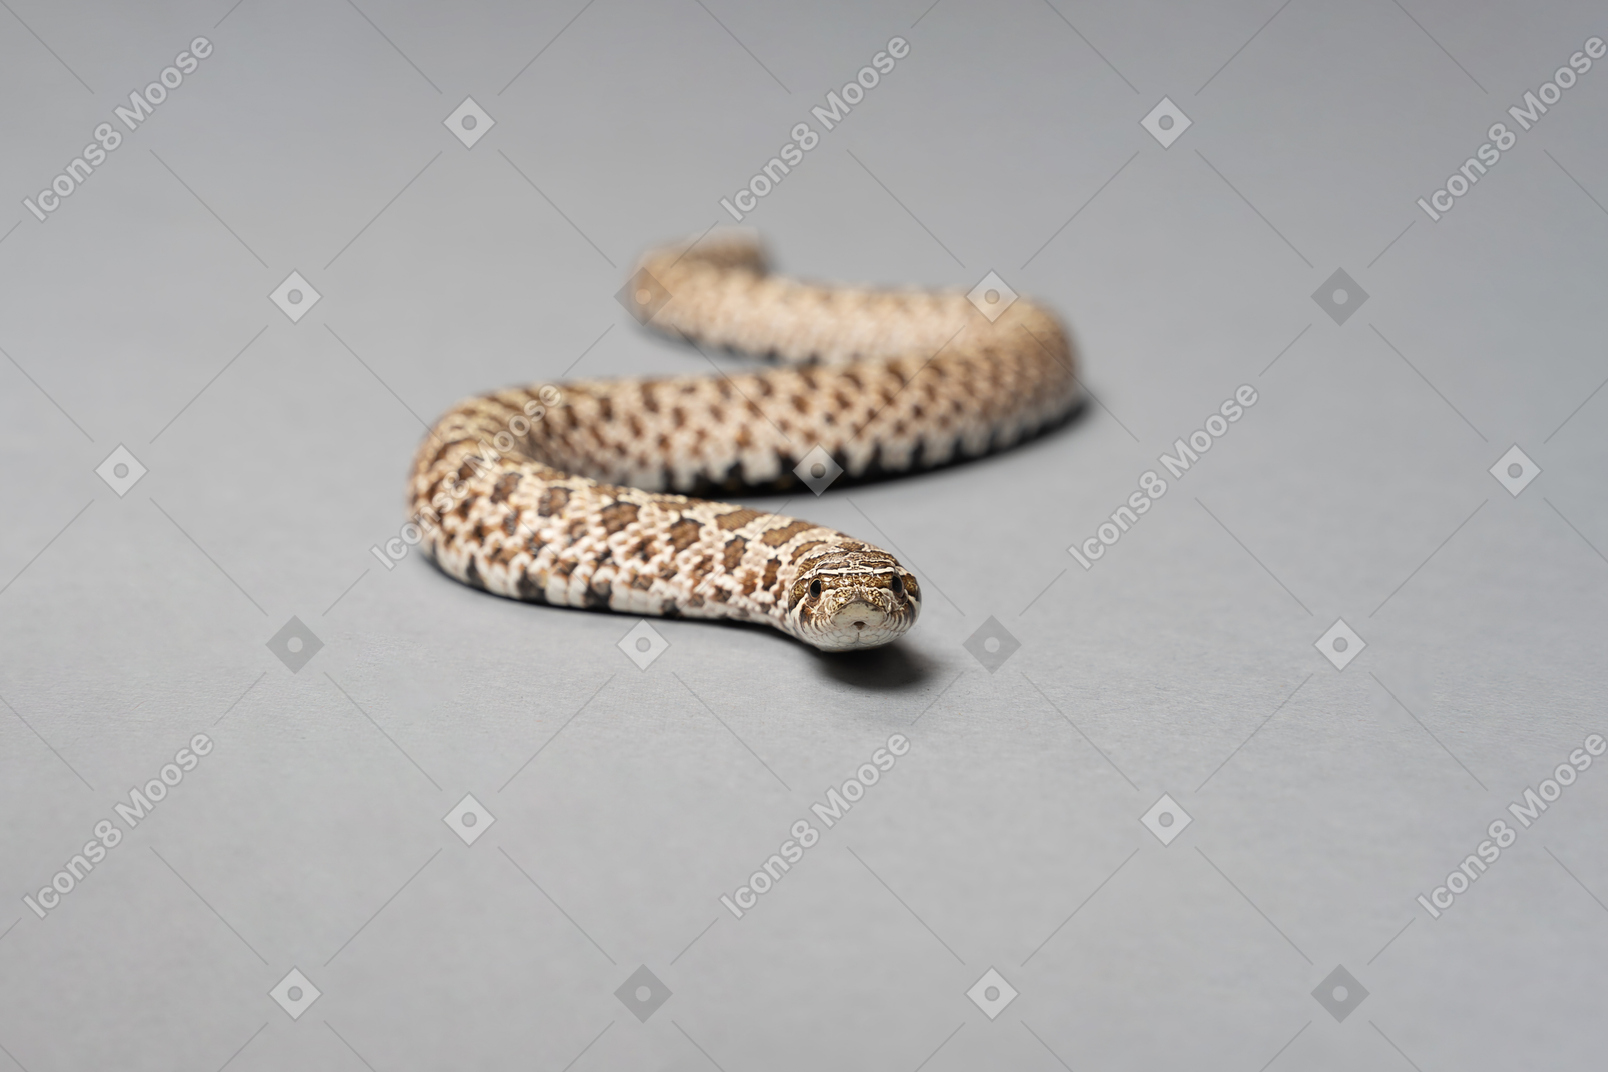 A little corn snake